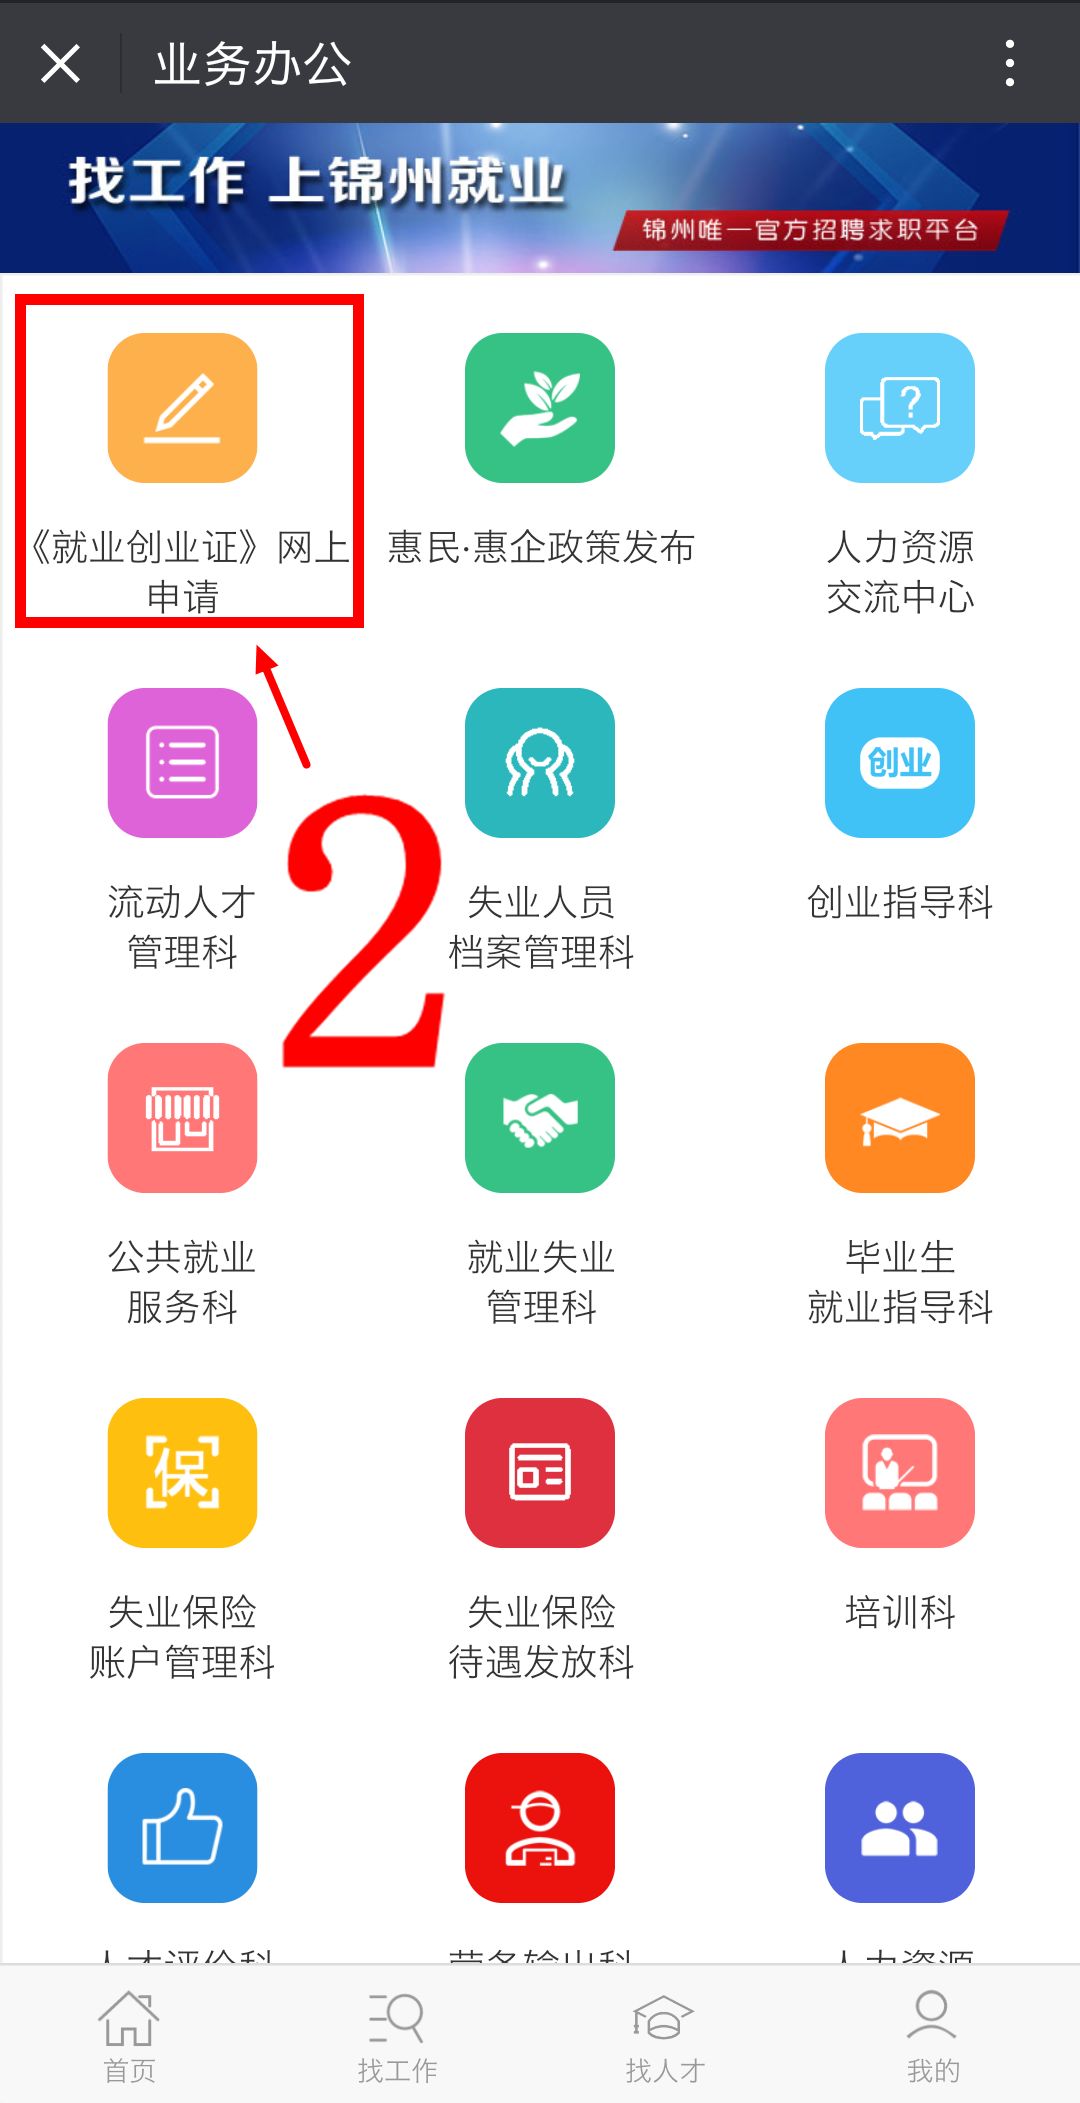 锦州人才招聘网_锦州人才网下载 v2.8.3.6 安卓手机版apk 优亿市场(2)